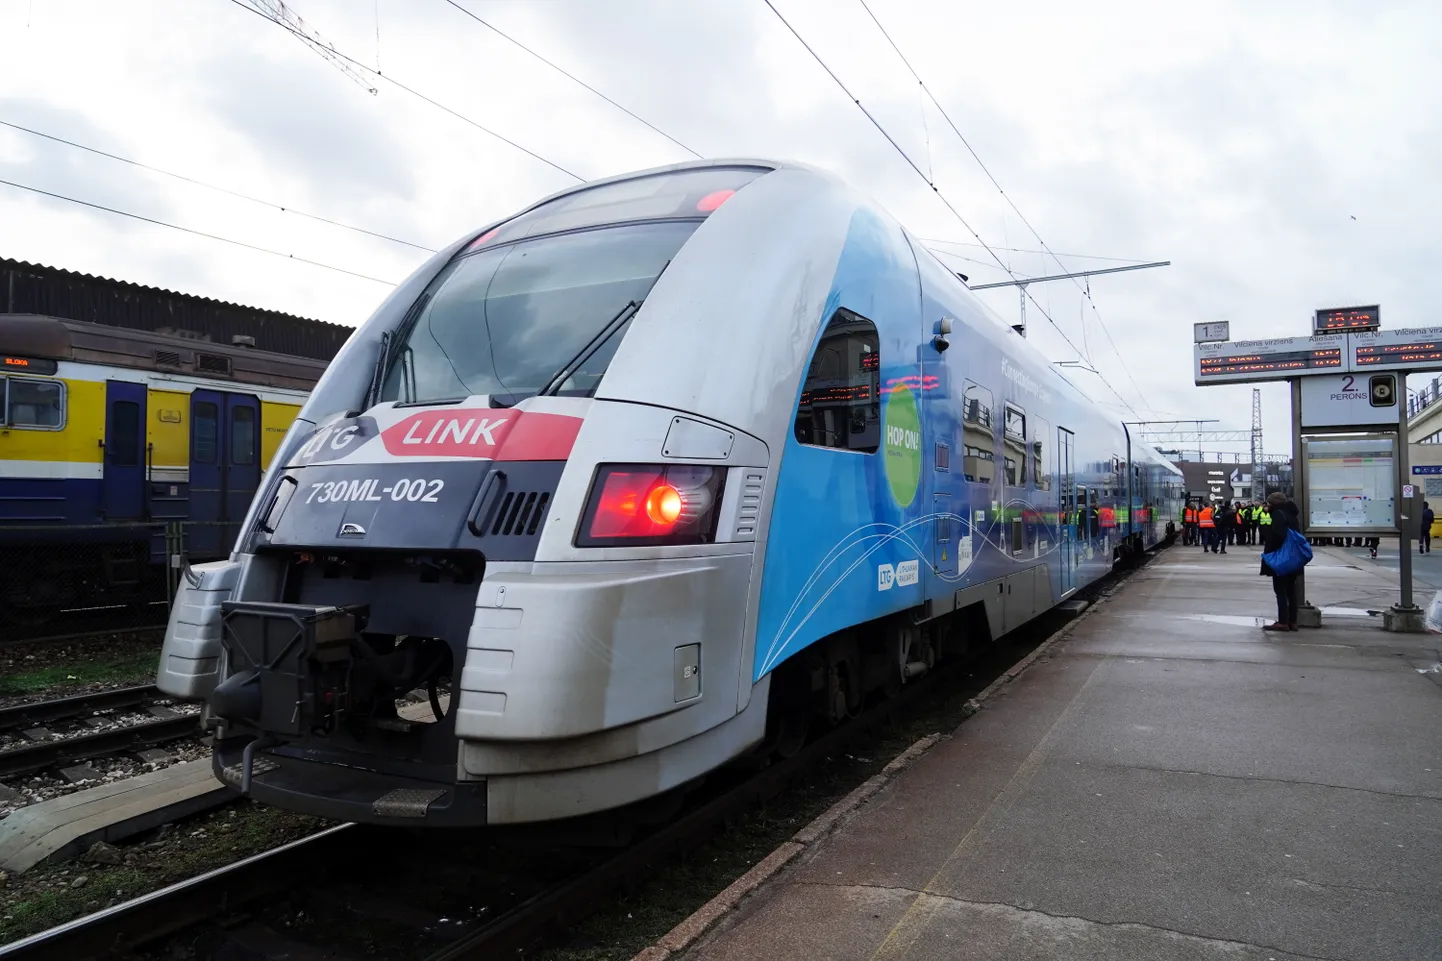 Пассажирский поезд литовского железнодорожного оператора LTG Link, который остановился на Центральном железнодорожном вокзале Риги.